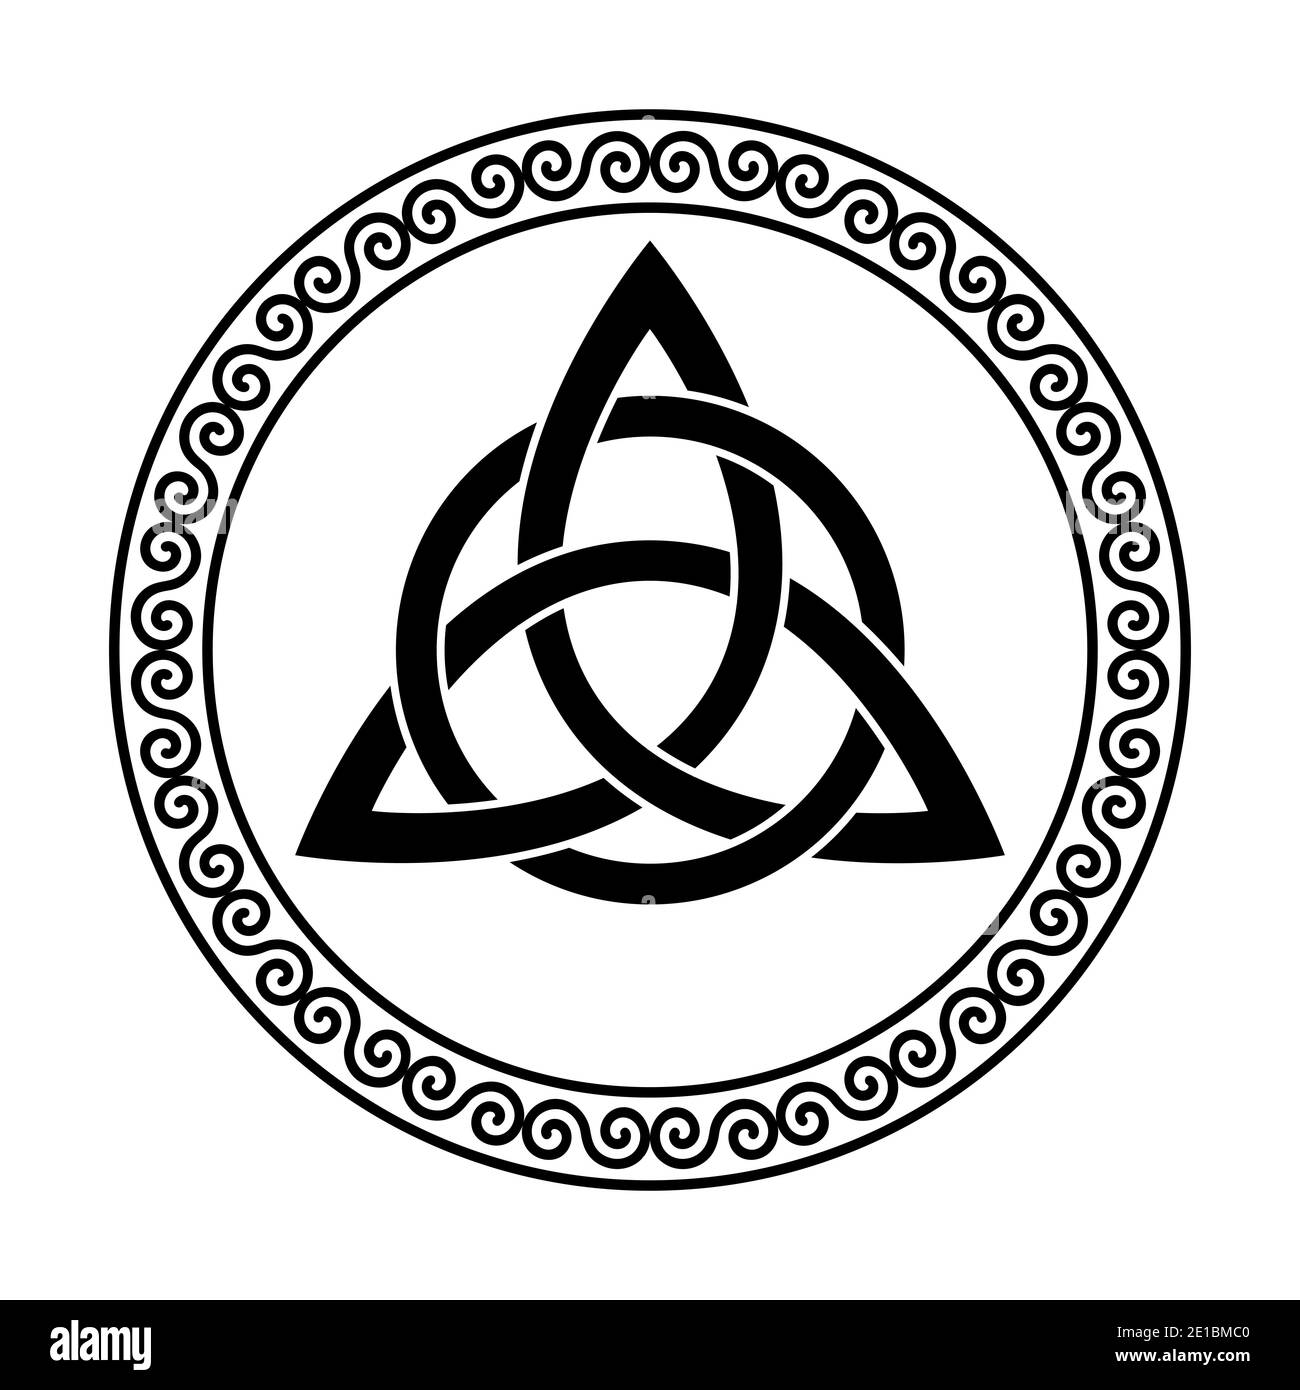 Cercle de noeud celtique Banque d'images noir et blanc - Alamy